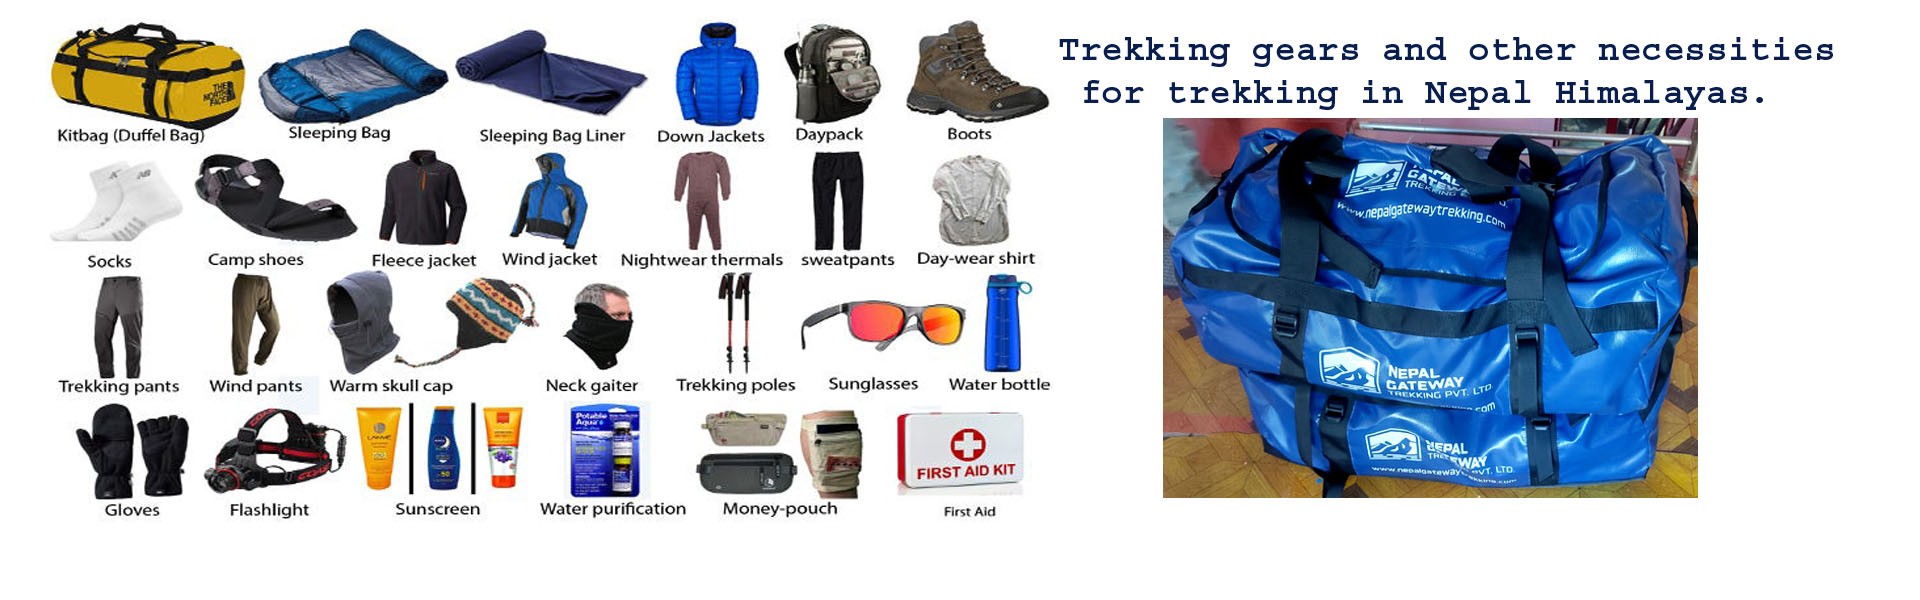 Trekking gears and other necessities for trekking in Nepal